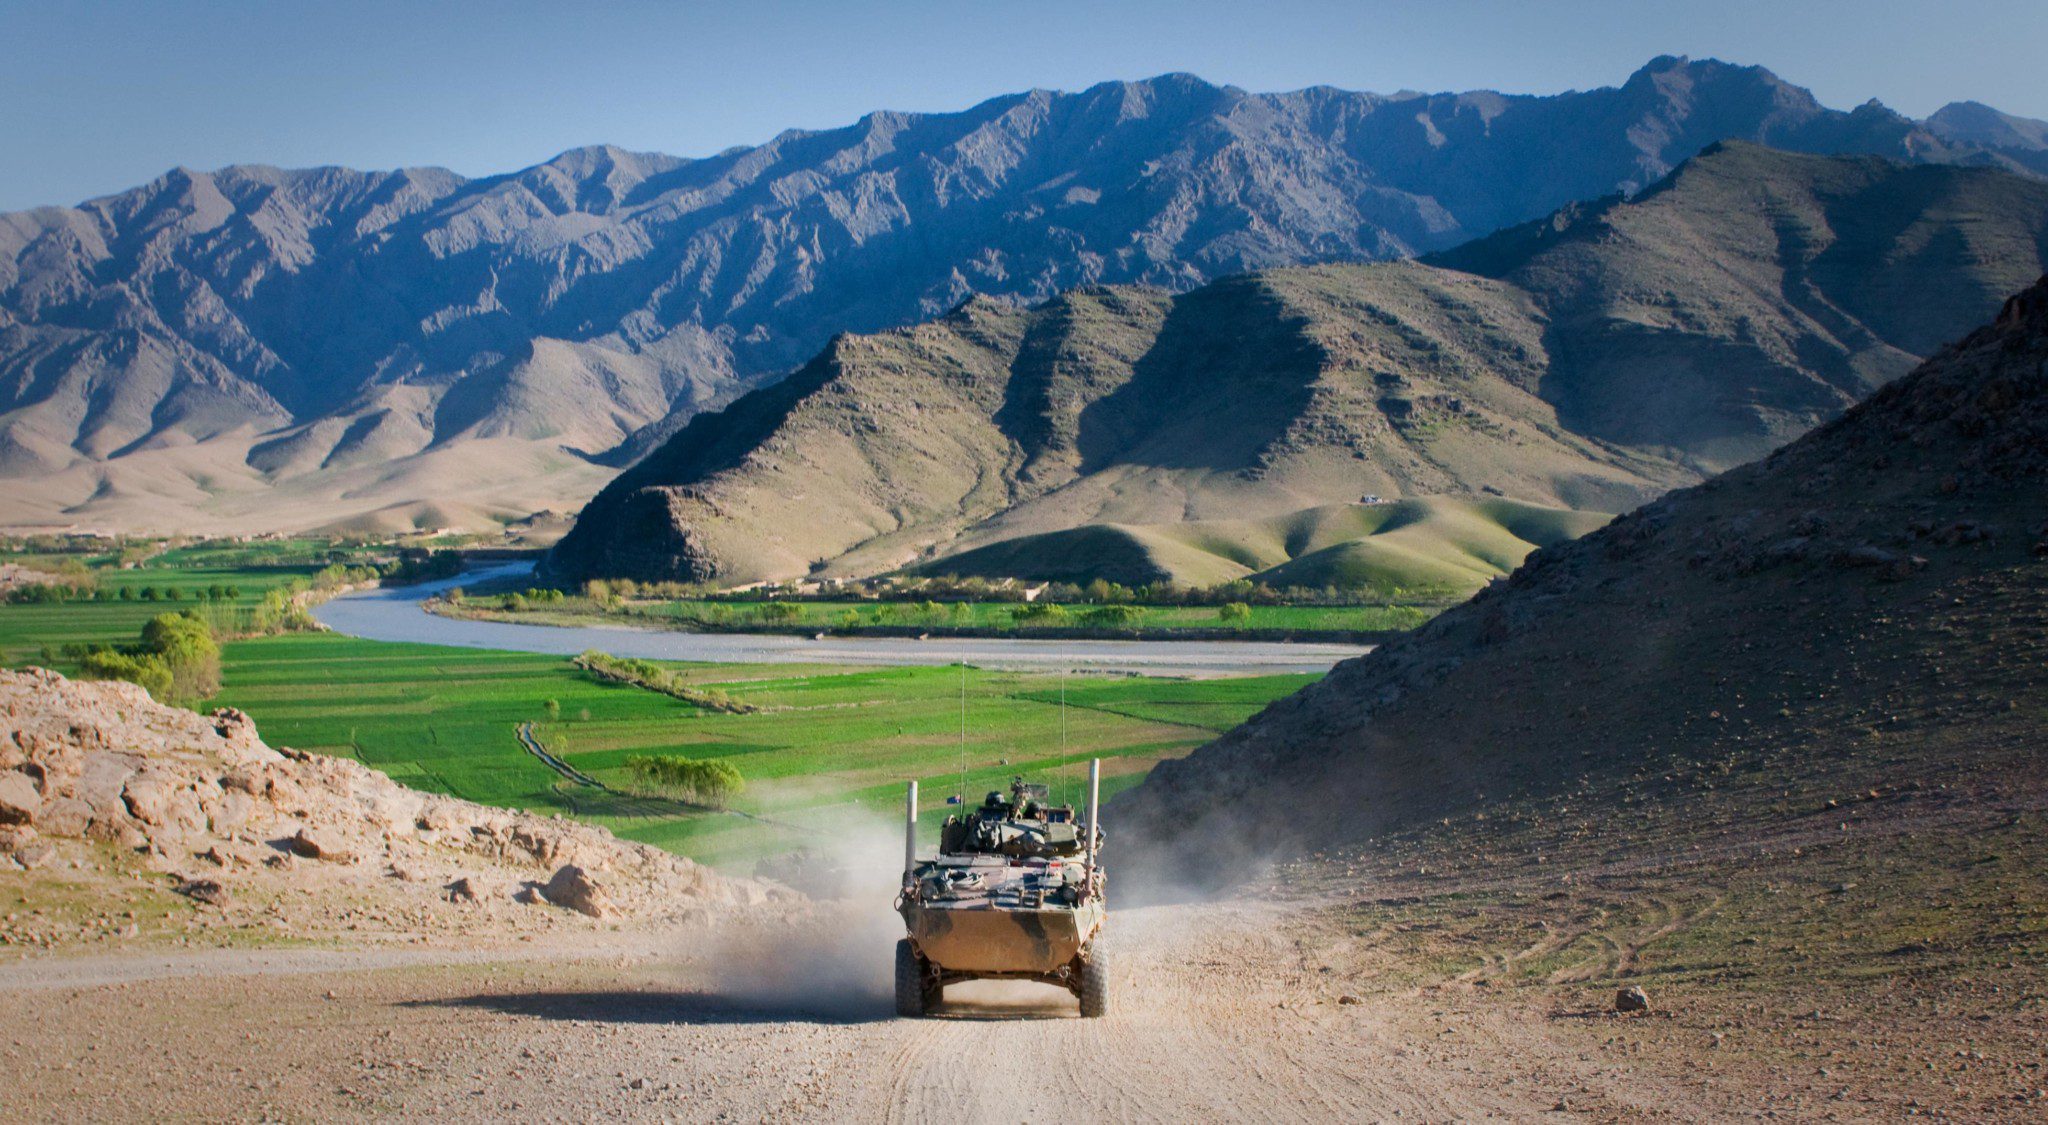 Le difficili trattative di pace con i talebani e il confronto intra-afghano